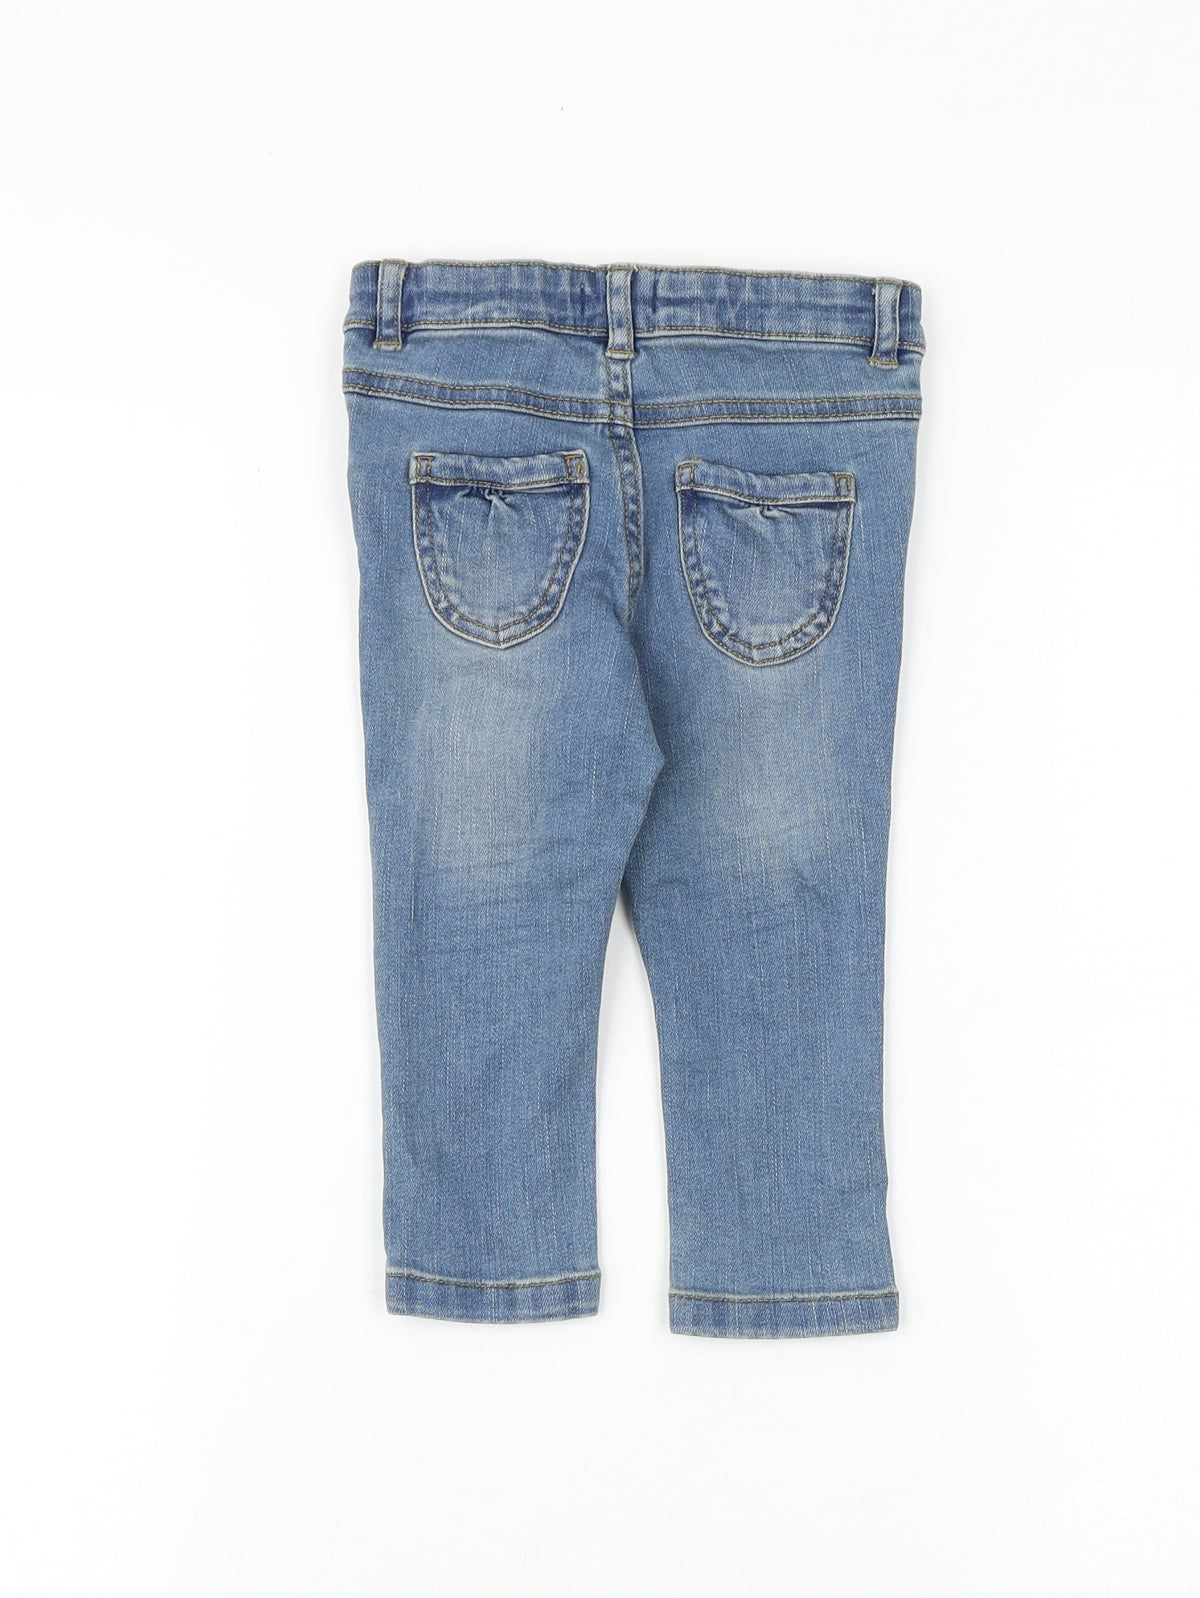 Vertbaudet Baby Blue Cotton Jogger Jeans Size 12 Months L50 cm Button - Heart Patches